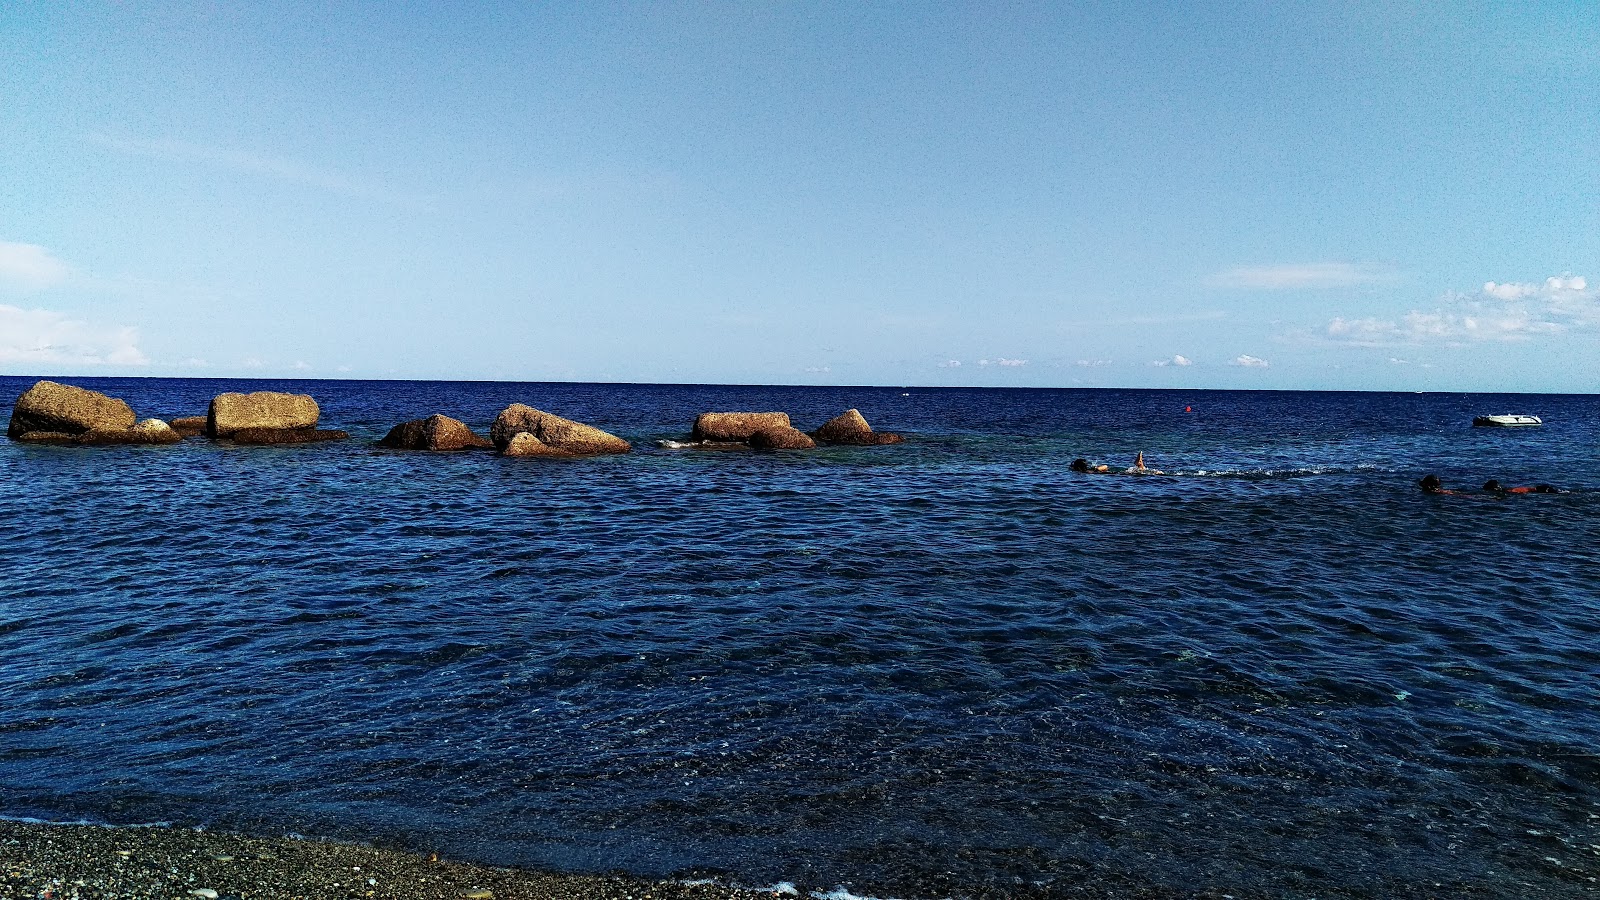 Φωτογραφία του Ciro' Marina beach με μακρά ευθεία ακτή